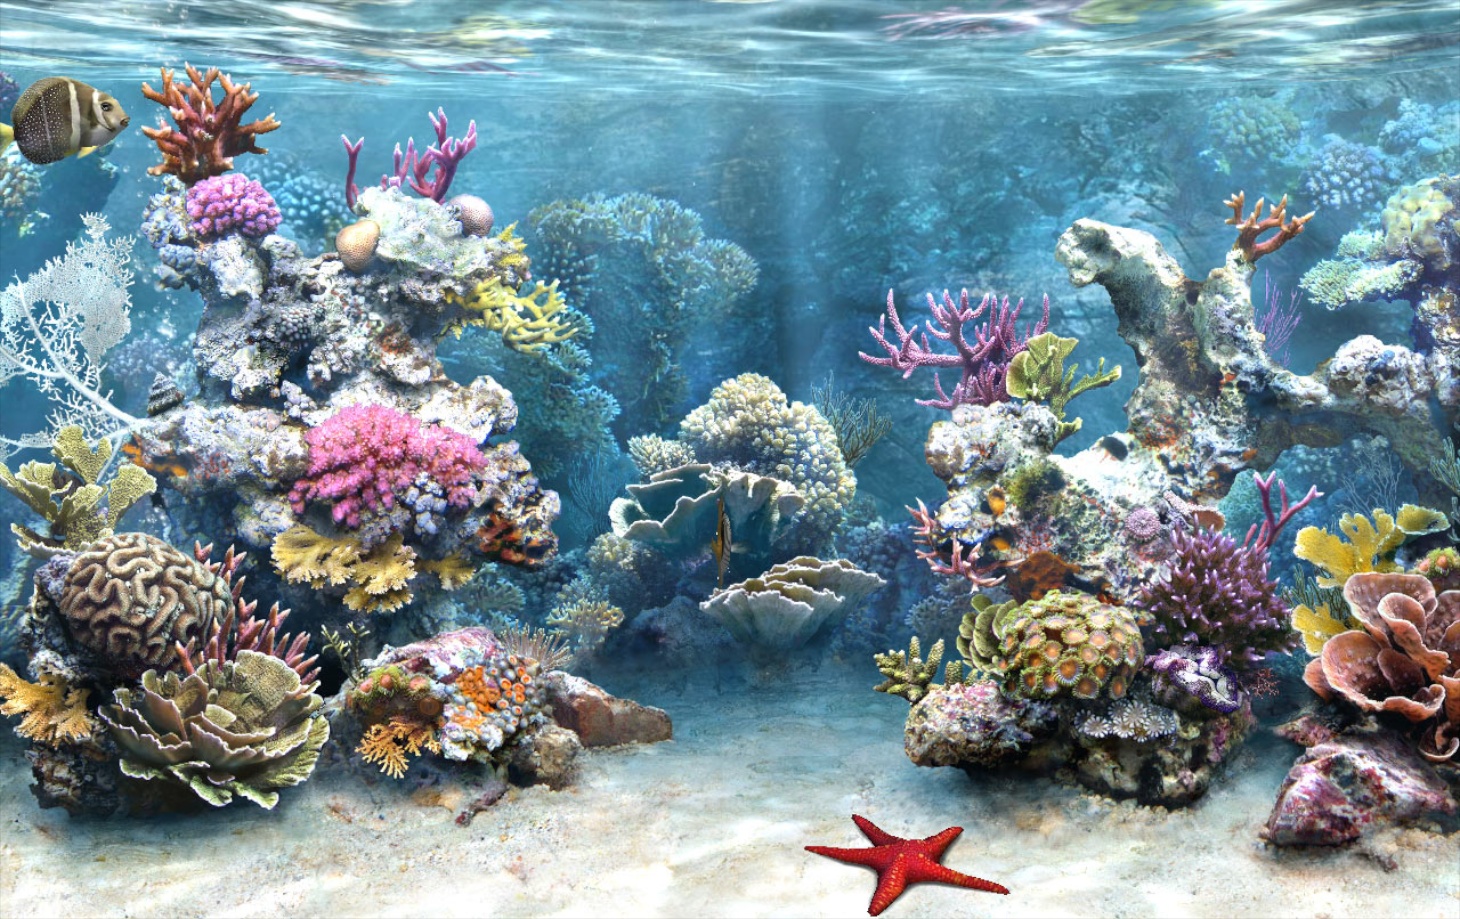 Mỗi khi bận rộn và căng thẳng, bạn có thể thưởng thức vẻ đẹp nguyên thủy của đại dương ngay trên màn hình điện thoại của bạn với hình nền Aquarium 3D đẹp. Với những hình ảnh đầy màu sắc và sống động, bạn sẽ cảm thấy như đang ngắm nhìn thế giới dưới lòng đại dương.